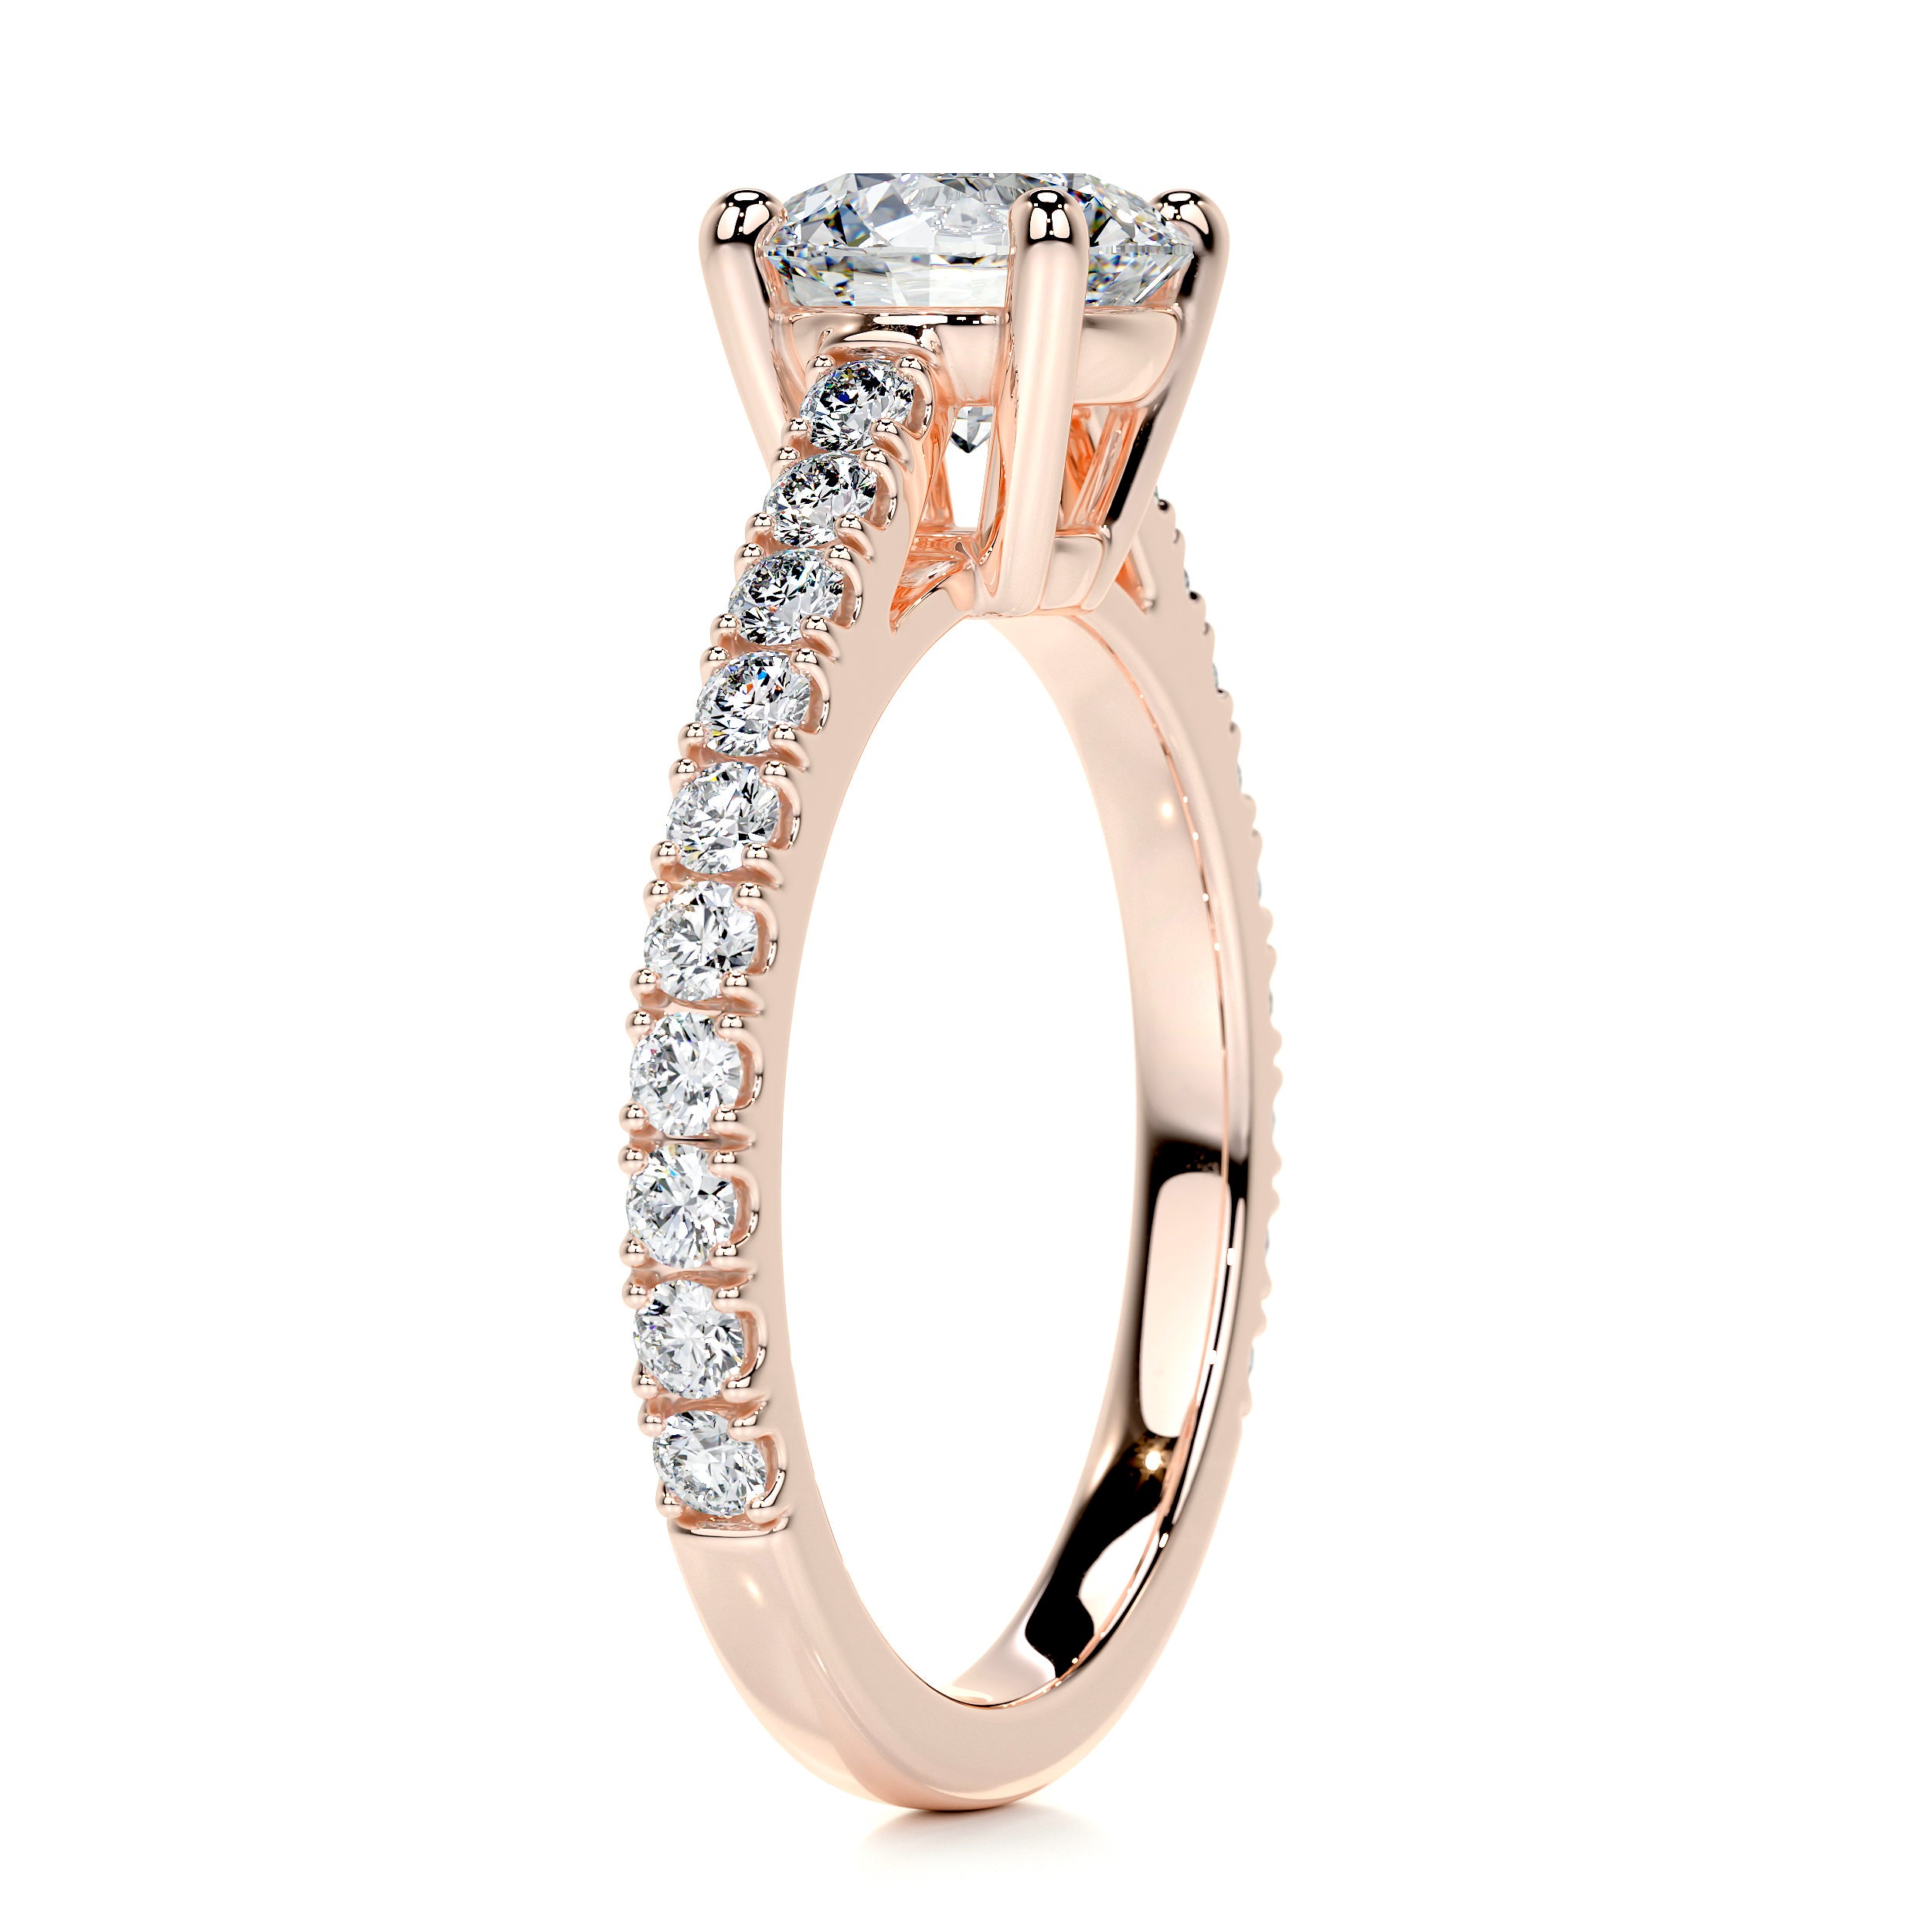 Aria Diamond Engagement Ring   (1 Carat) -14K Rose Gold